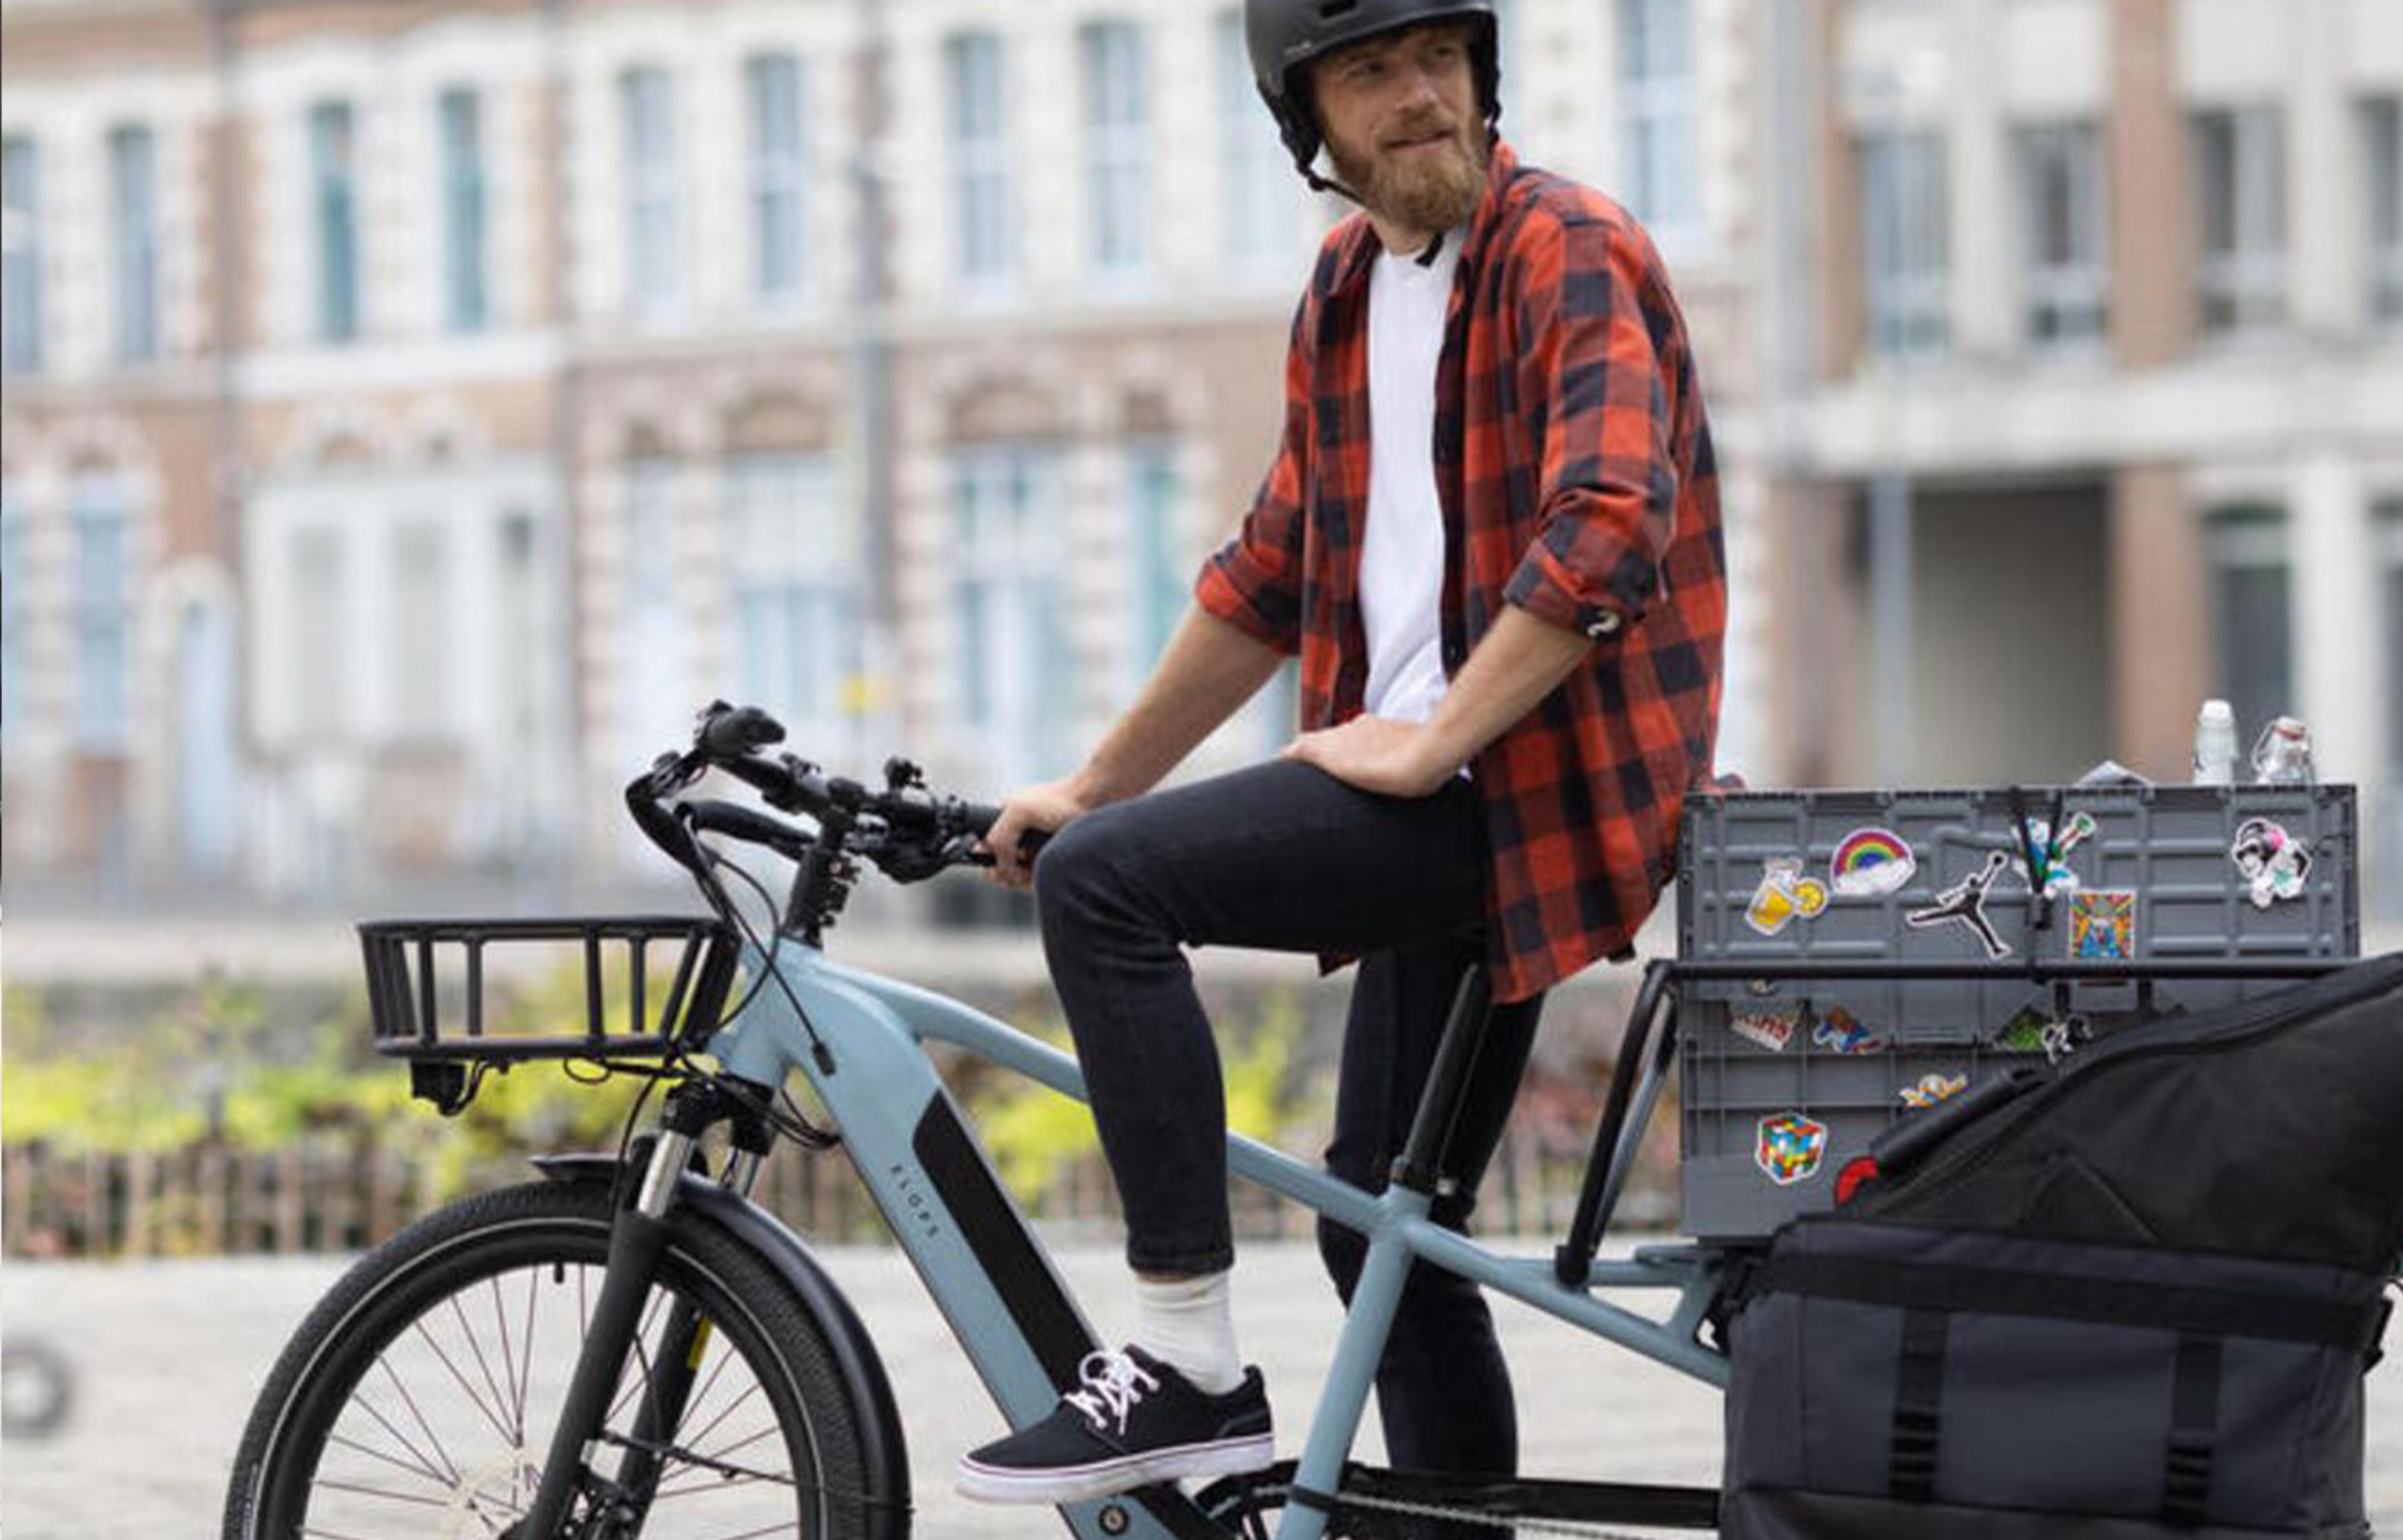 La roue électrique, future révolution pour le vélo urbain ?